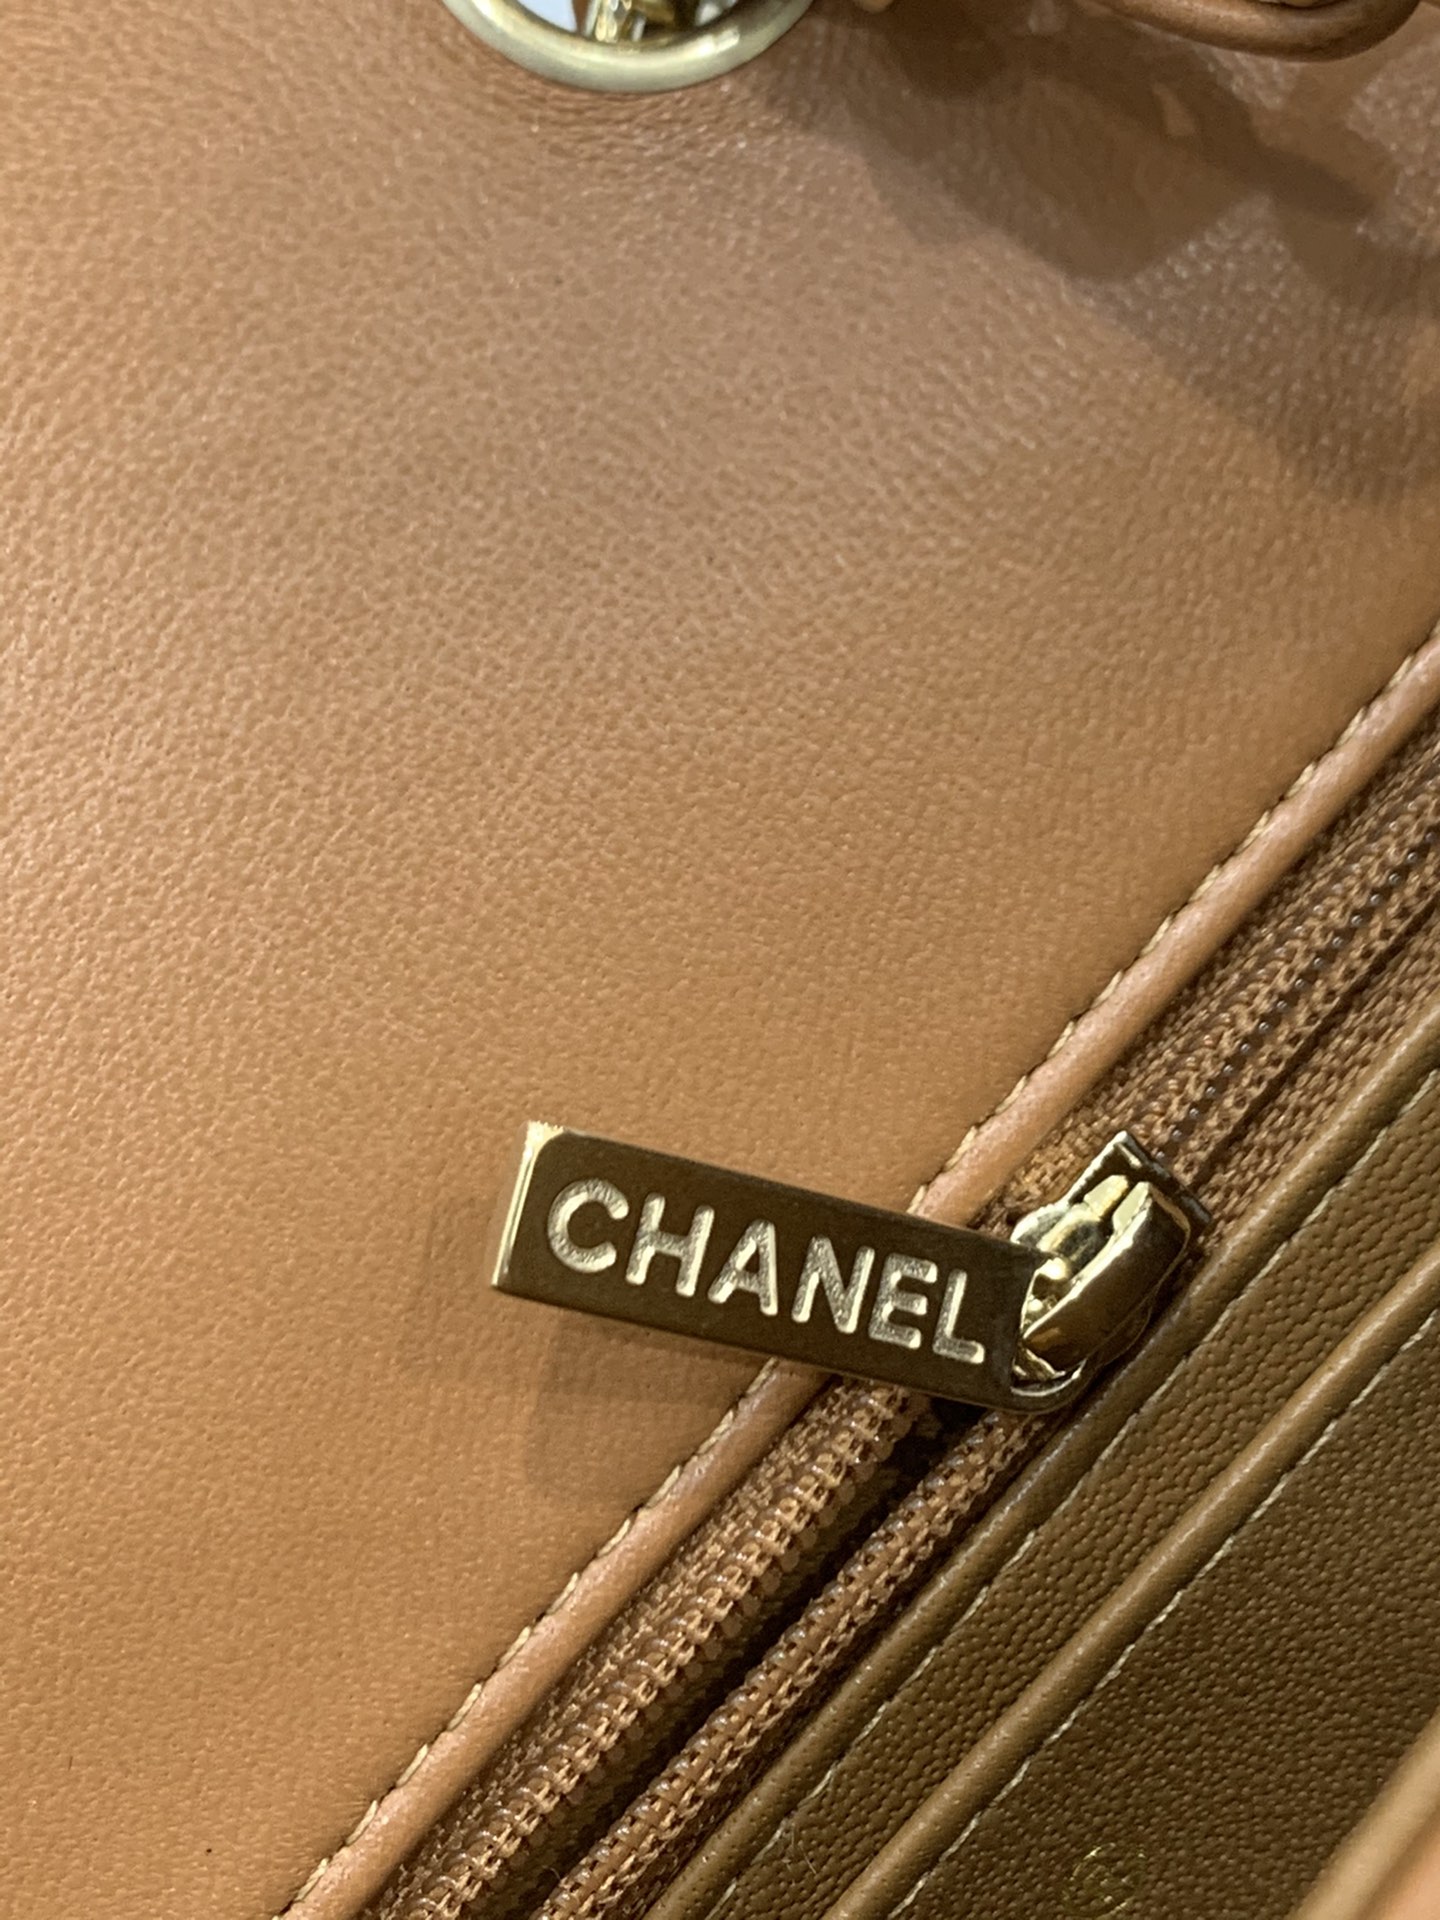 升级芯片版 2021春夏新品 全钢浅金色金属 真品级 Chanel CF mini号 20cm  原厂bodin joyeux 羔羊皮 21年新色焦糖色